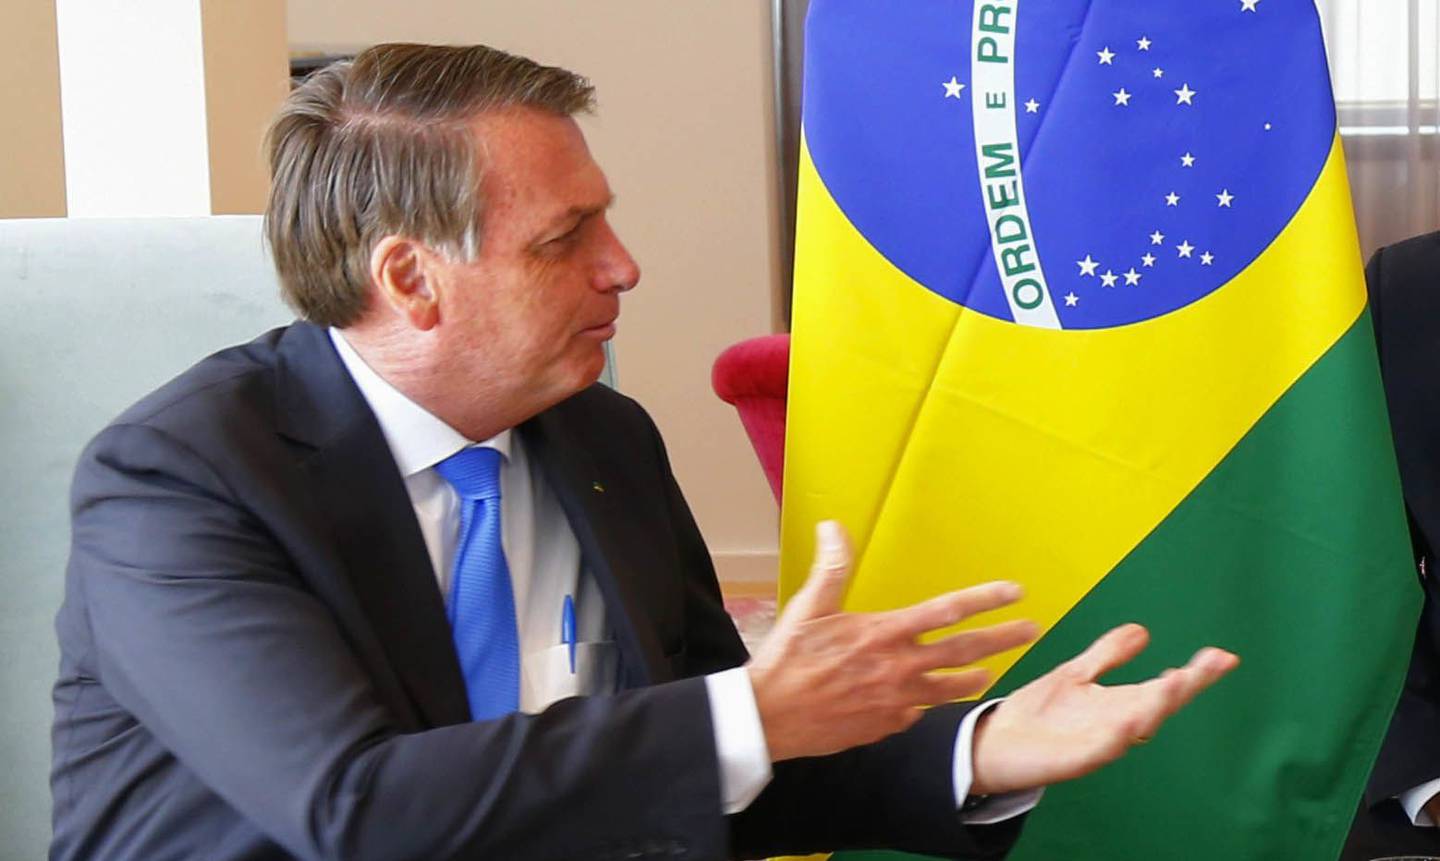 El presidente de Brasil, Jair Bolsonaro, y el primer ministro británico, Boris Johnson, se sientan para una reunión bilateral en la residencia diplomática del Reino Unido el 20 de septiembre de 2021 en la ciudad de Nueva York. El primer ministro británico es uno de los más de 100 jefes de estado o de gobierno que asistirán en persona a la 76ª sesión de la Asamblea General de la ONU.